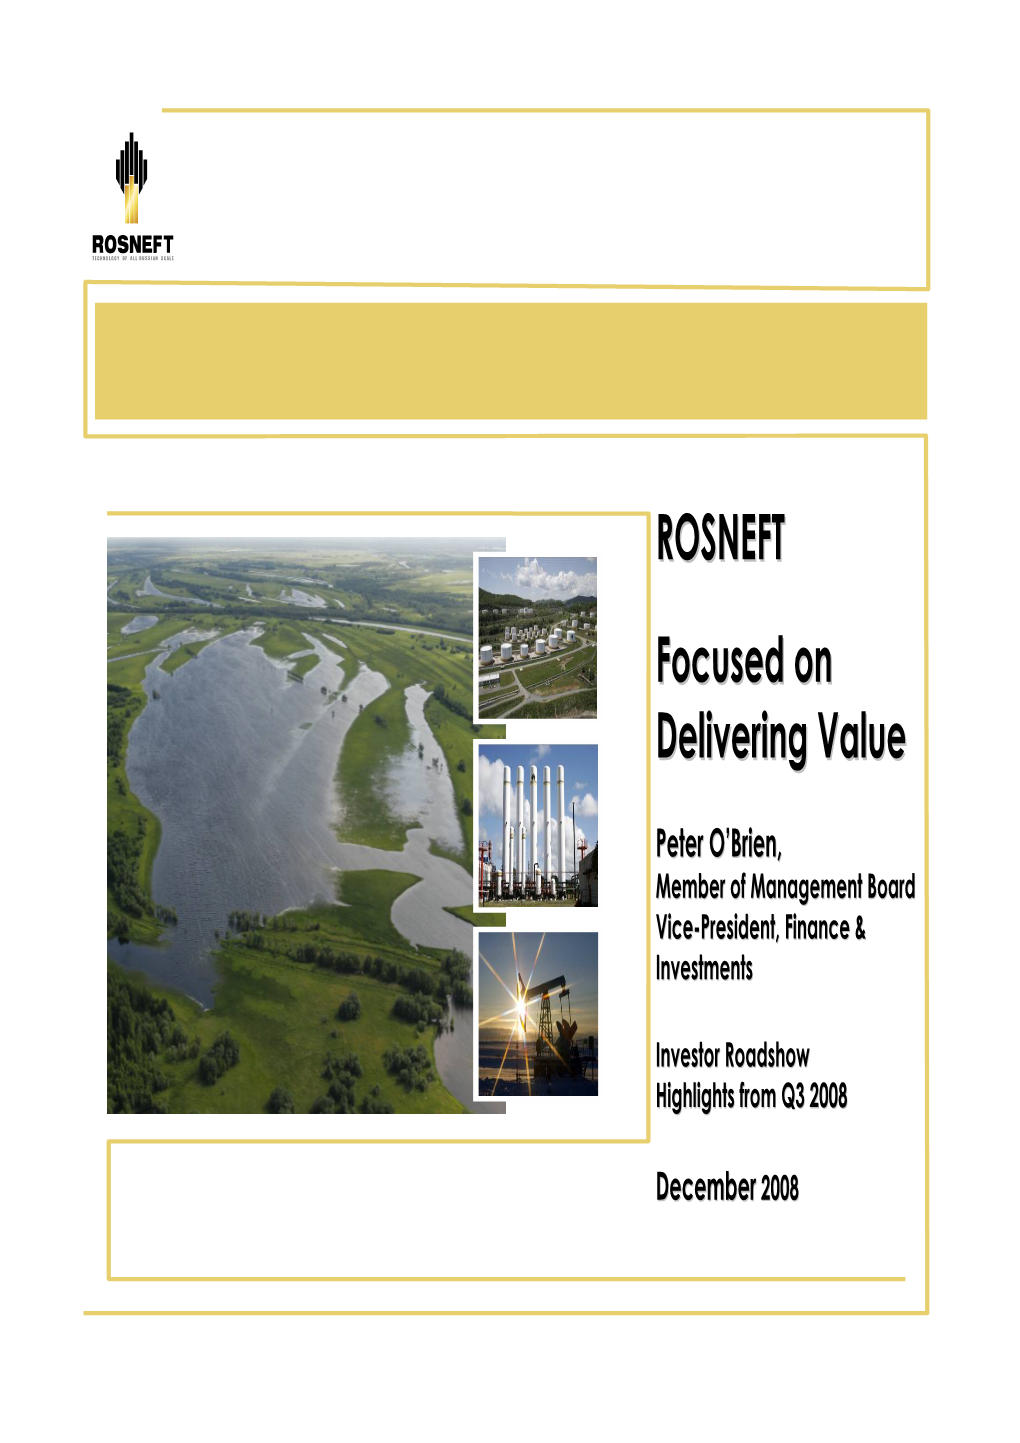 ROSNEFT Focused on Delivering Value